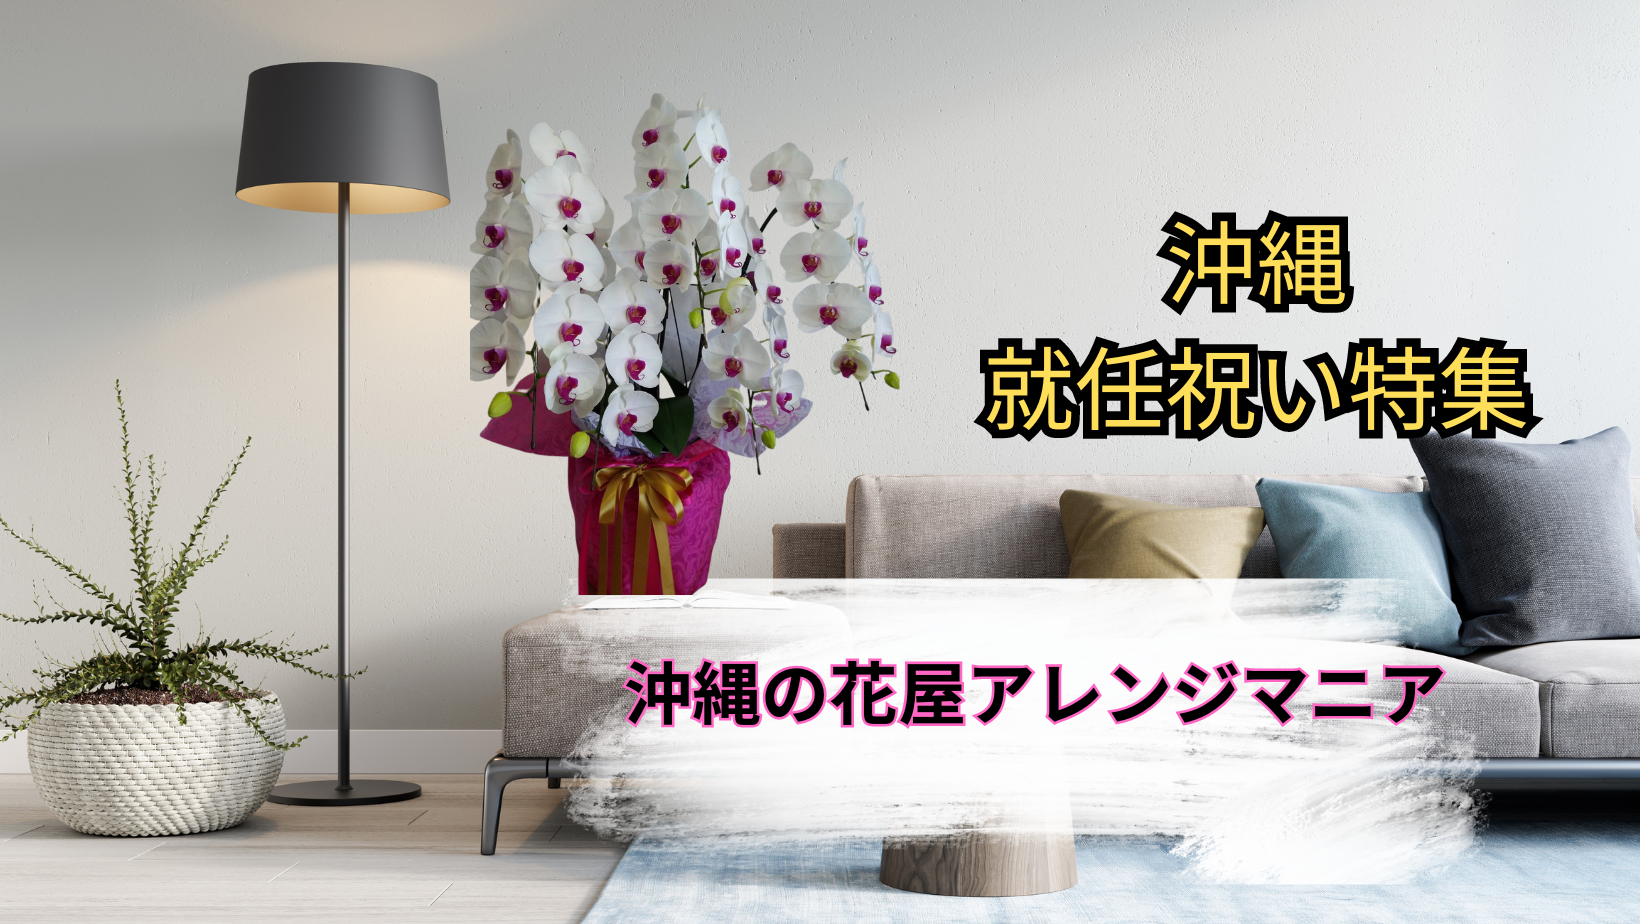 沖縄のオンライン花屋・就任祝い週の胡蝶蘭